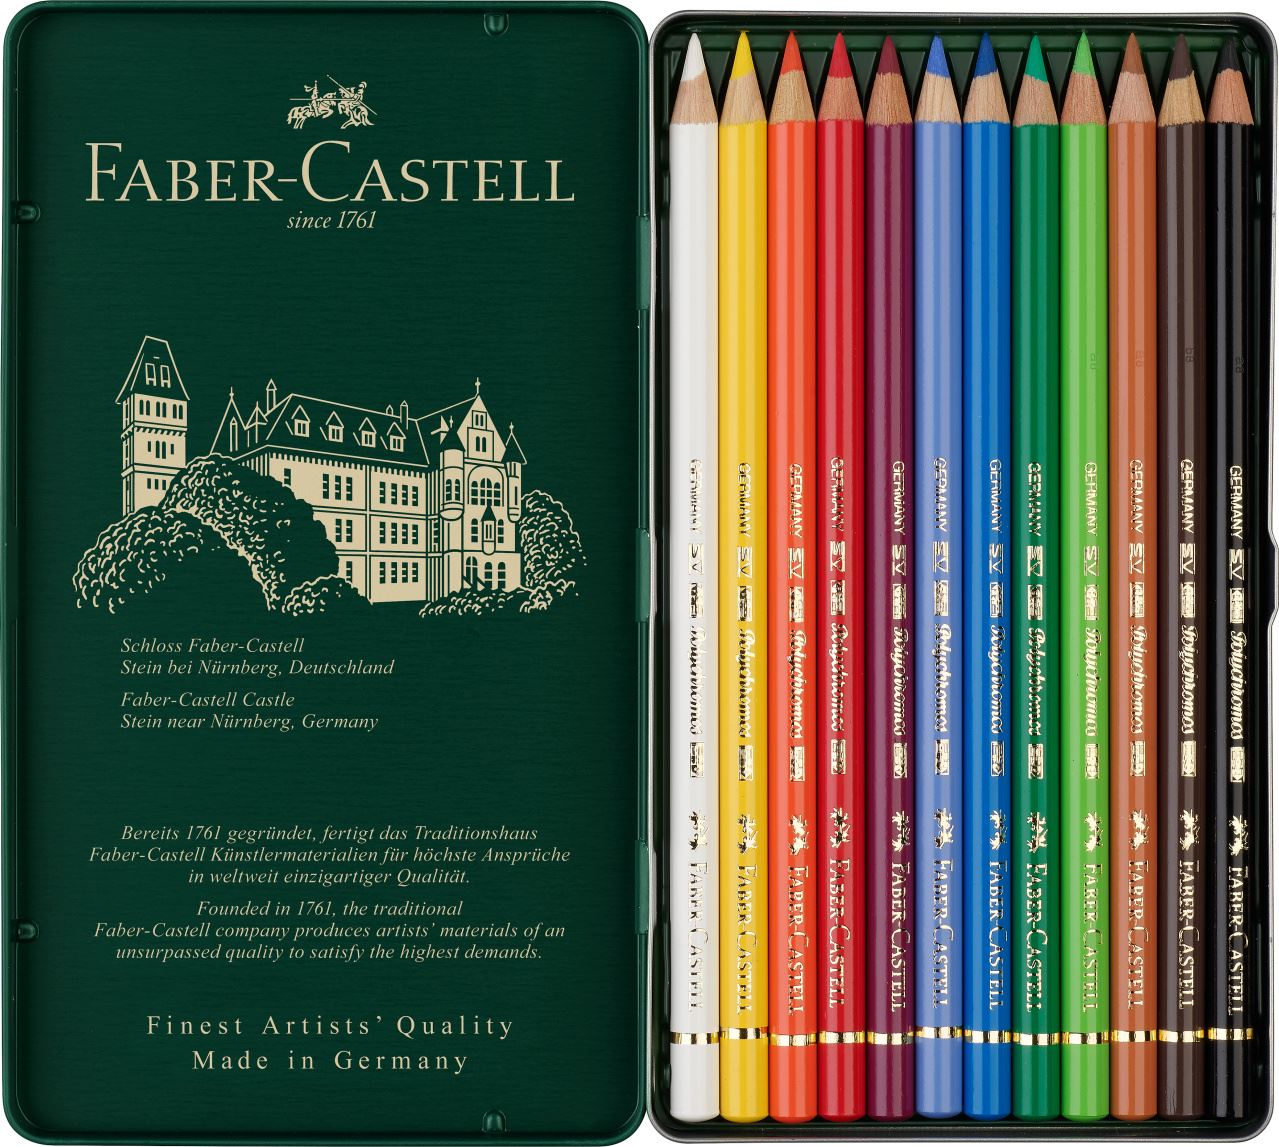 Faber-Castell - ポリクロモス色鉛筆 12色 (缶入）